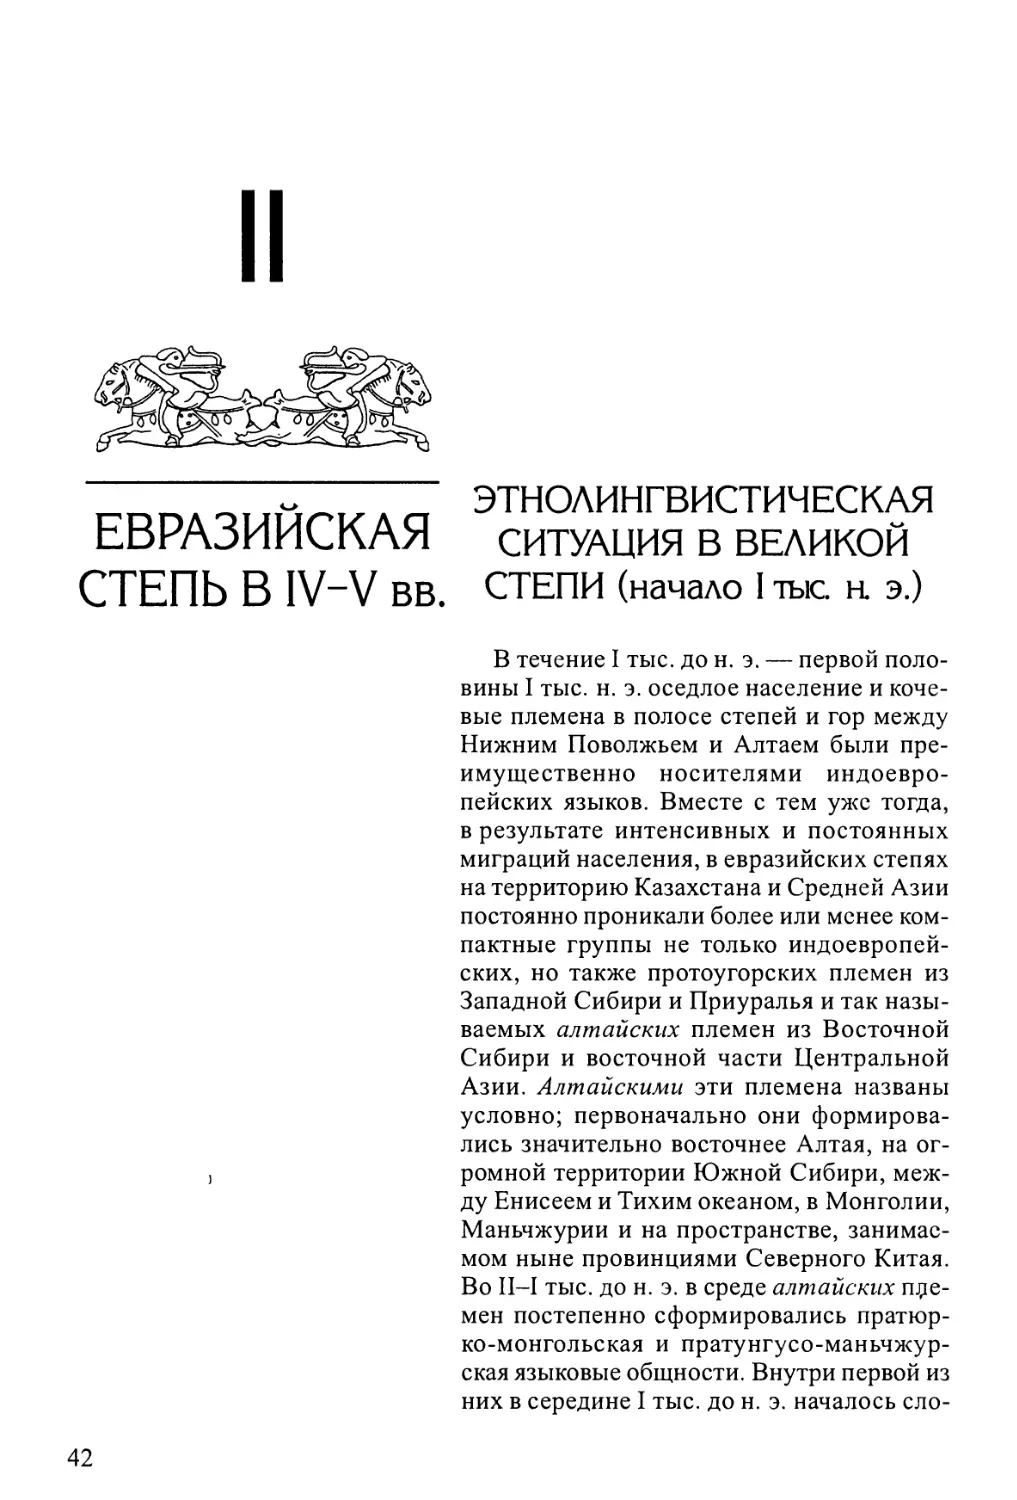 II. Евразийская степь в IV-V вв.